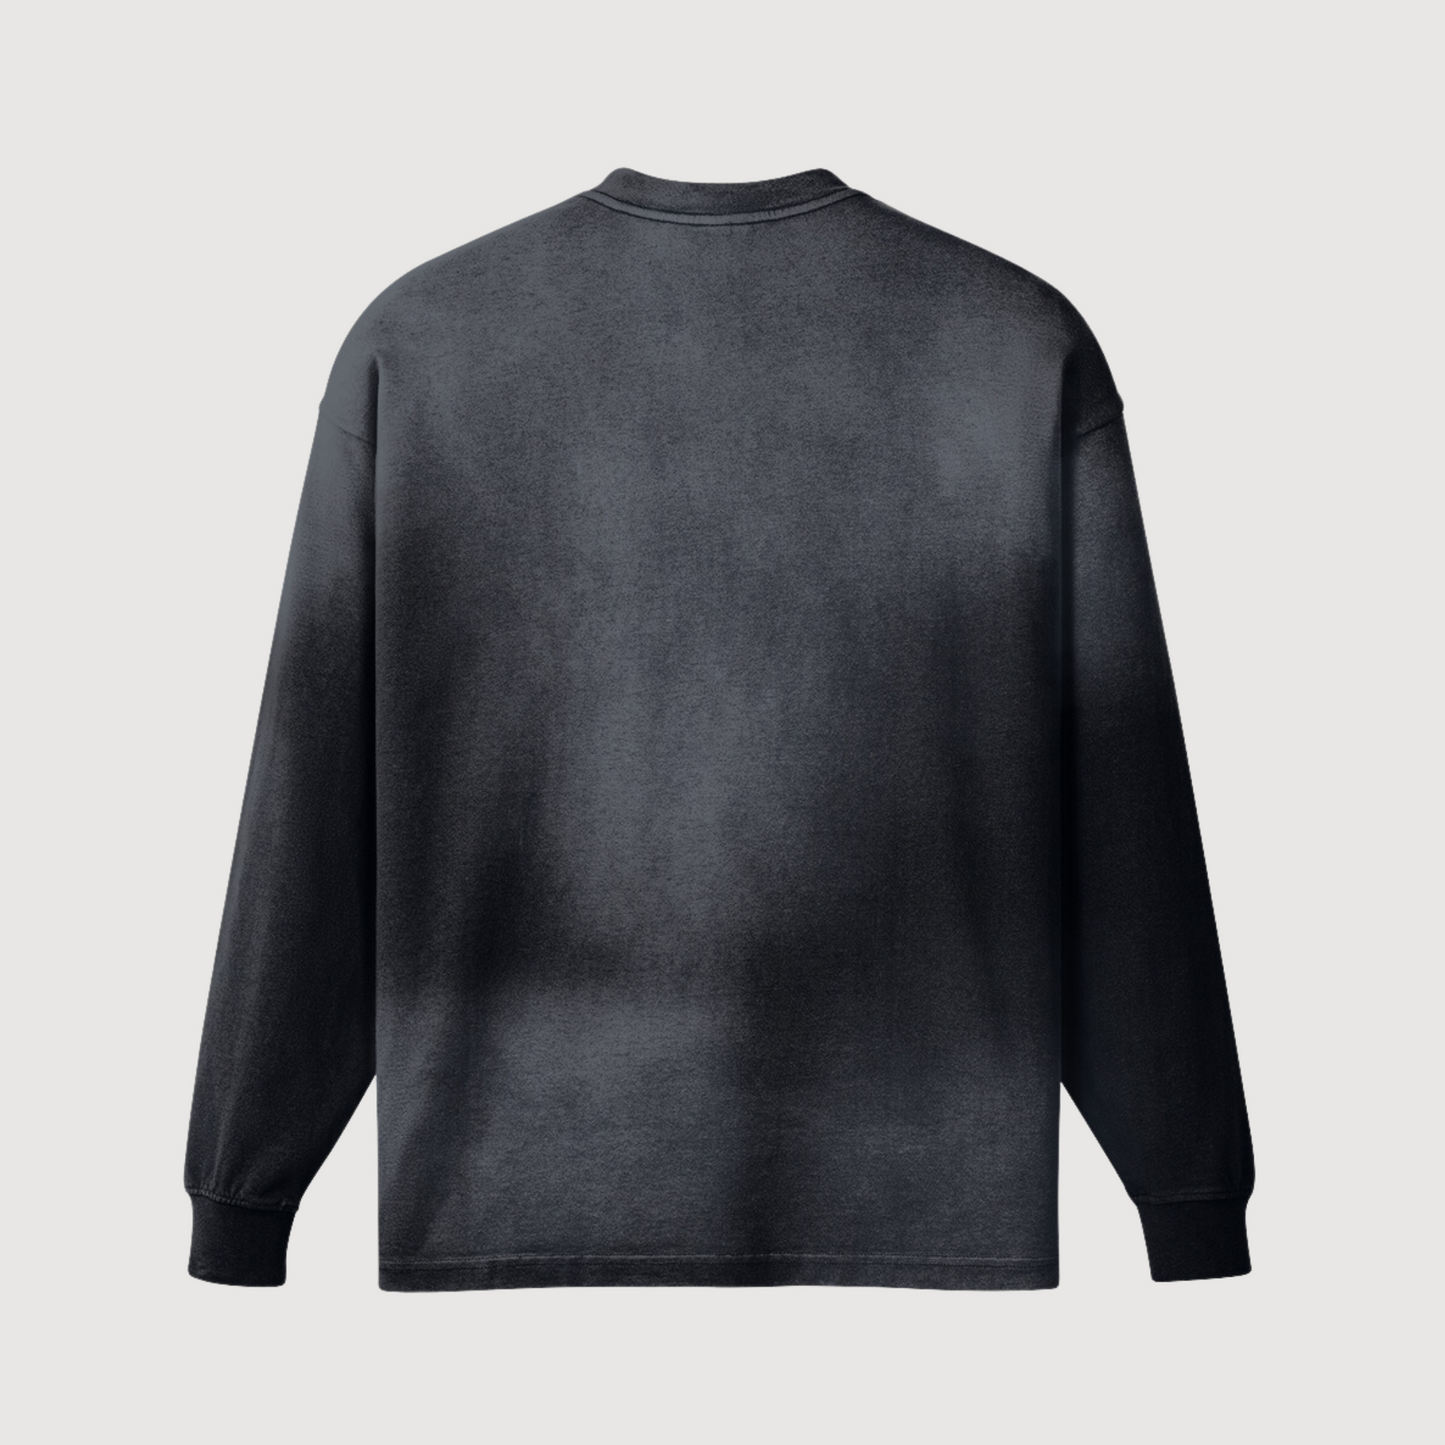 Black and grey crewneck luxury streetwear oversized sweatshirt